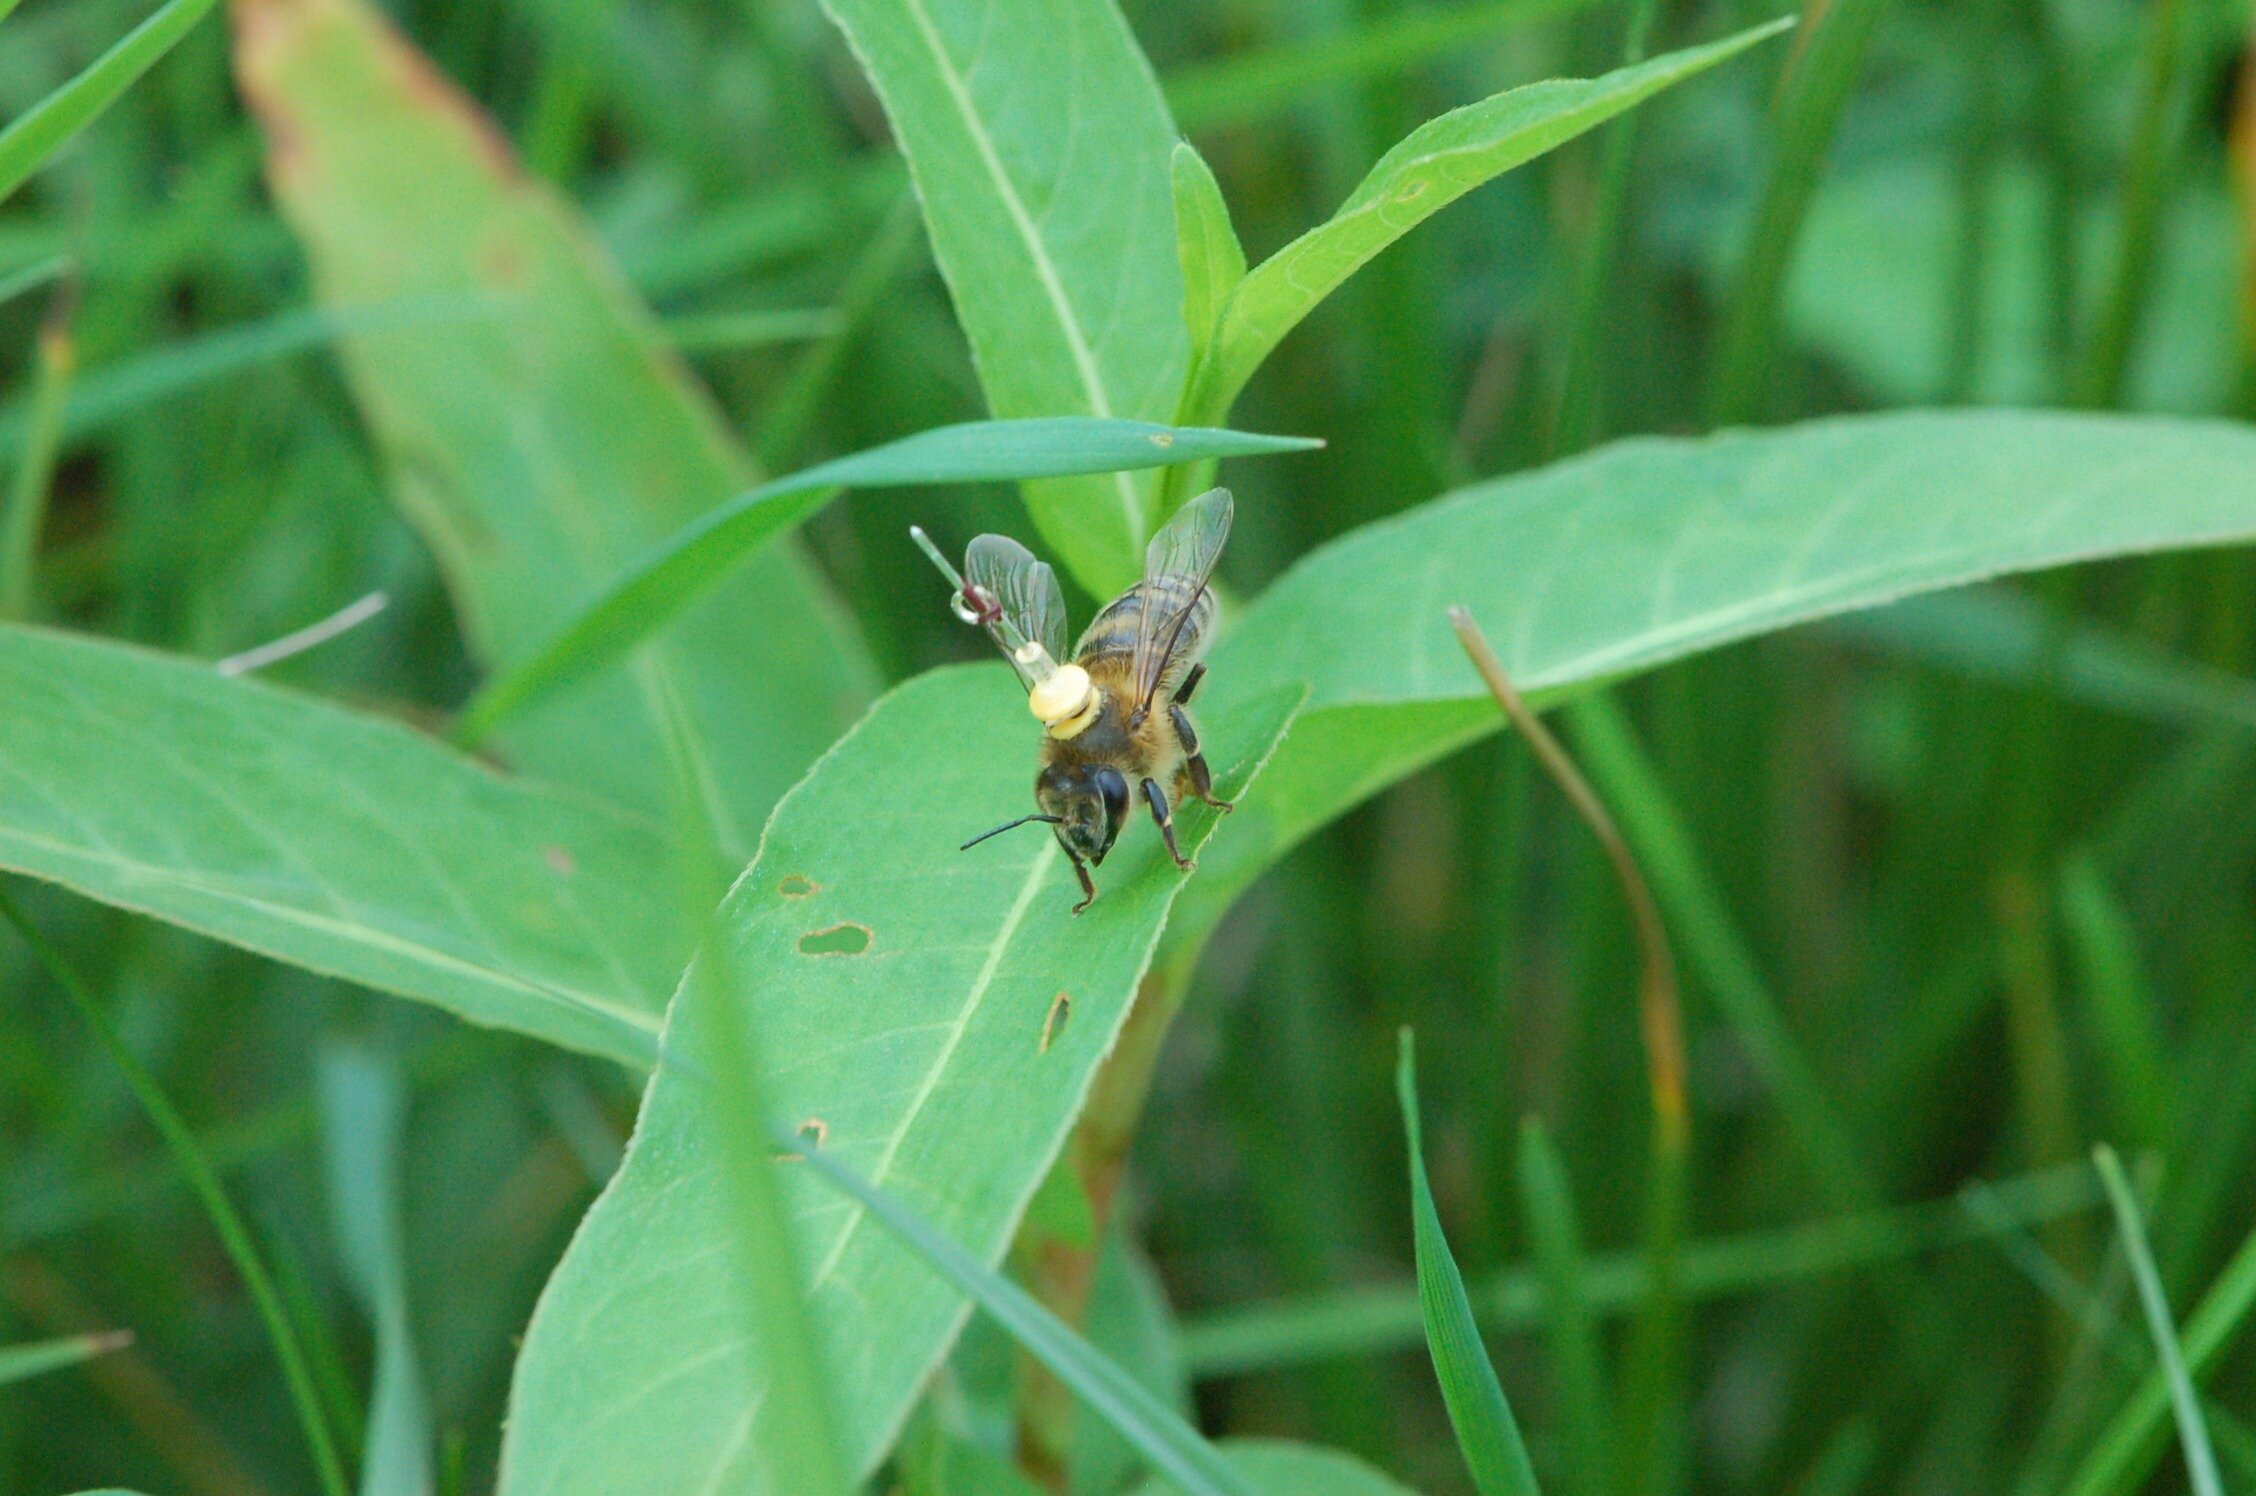 Pszczoły podążają za liniowymi punktami orientacyjnymi, aby znaleźć drogę do domu, tak jak pierwsi piloci